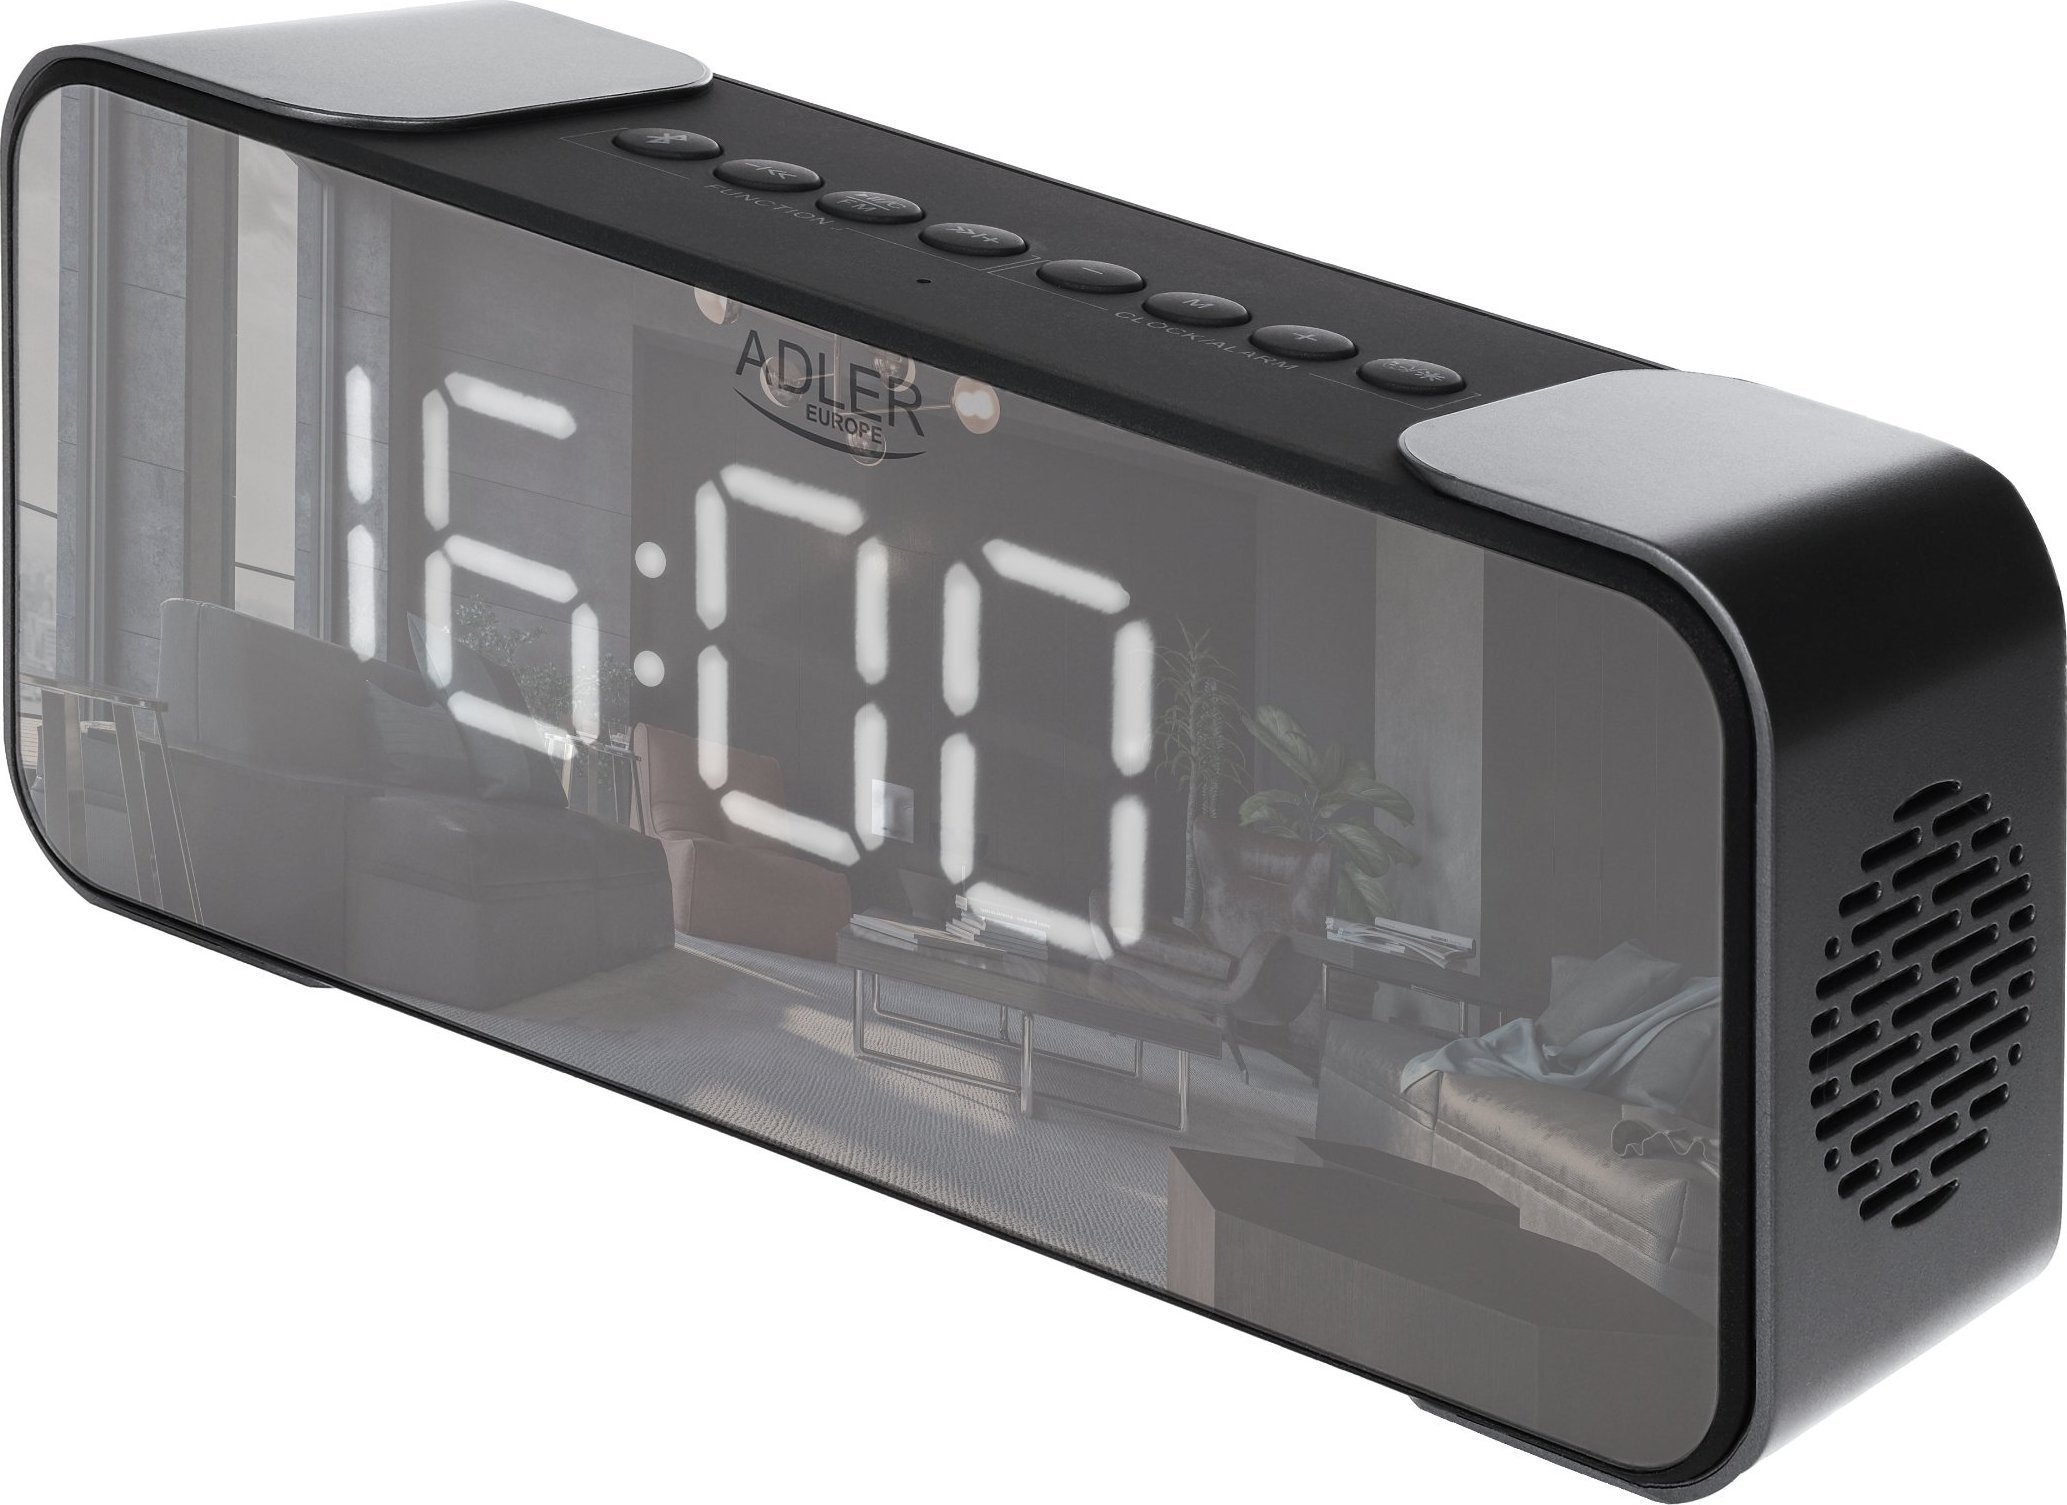 Radio ceas cu alarmă Adler Radio cu ceas AD1190 argintiu